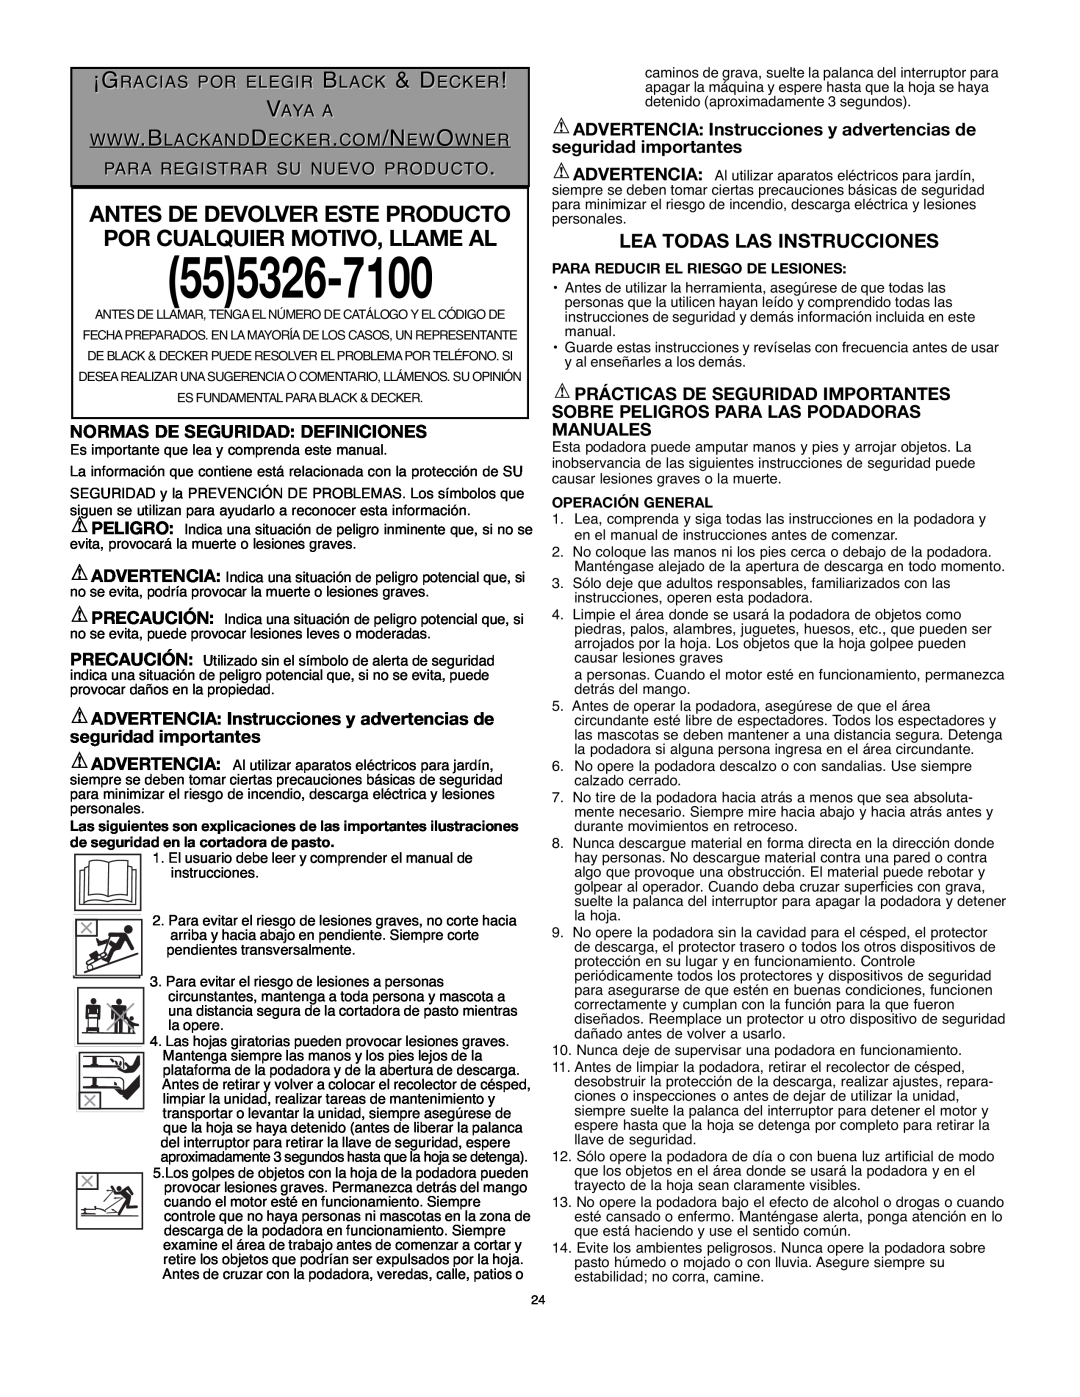 Black & Decker 90514757 instruction manual Lea Todas Las Instrucciones, Normas De Seguridad Definiciones, 555326-7100 